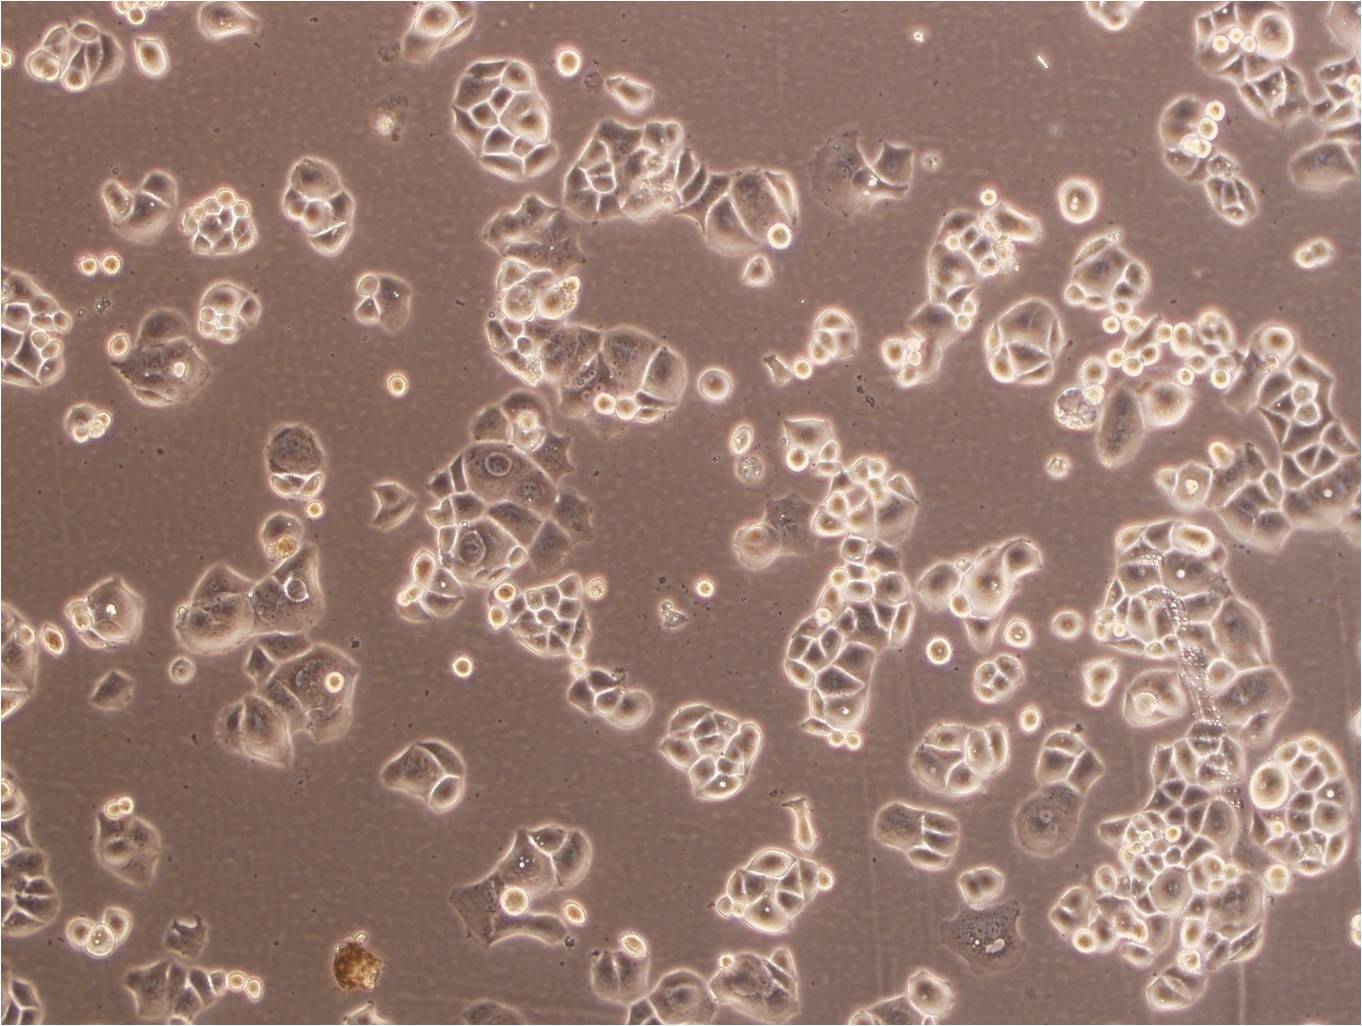 MC3T3-E1 Cells|小鼠胚胎成骨细胞前体克隆细胞(包送STR鉴定报告),MC3T3-E1 Cells